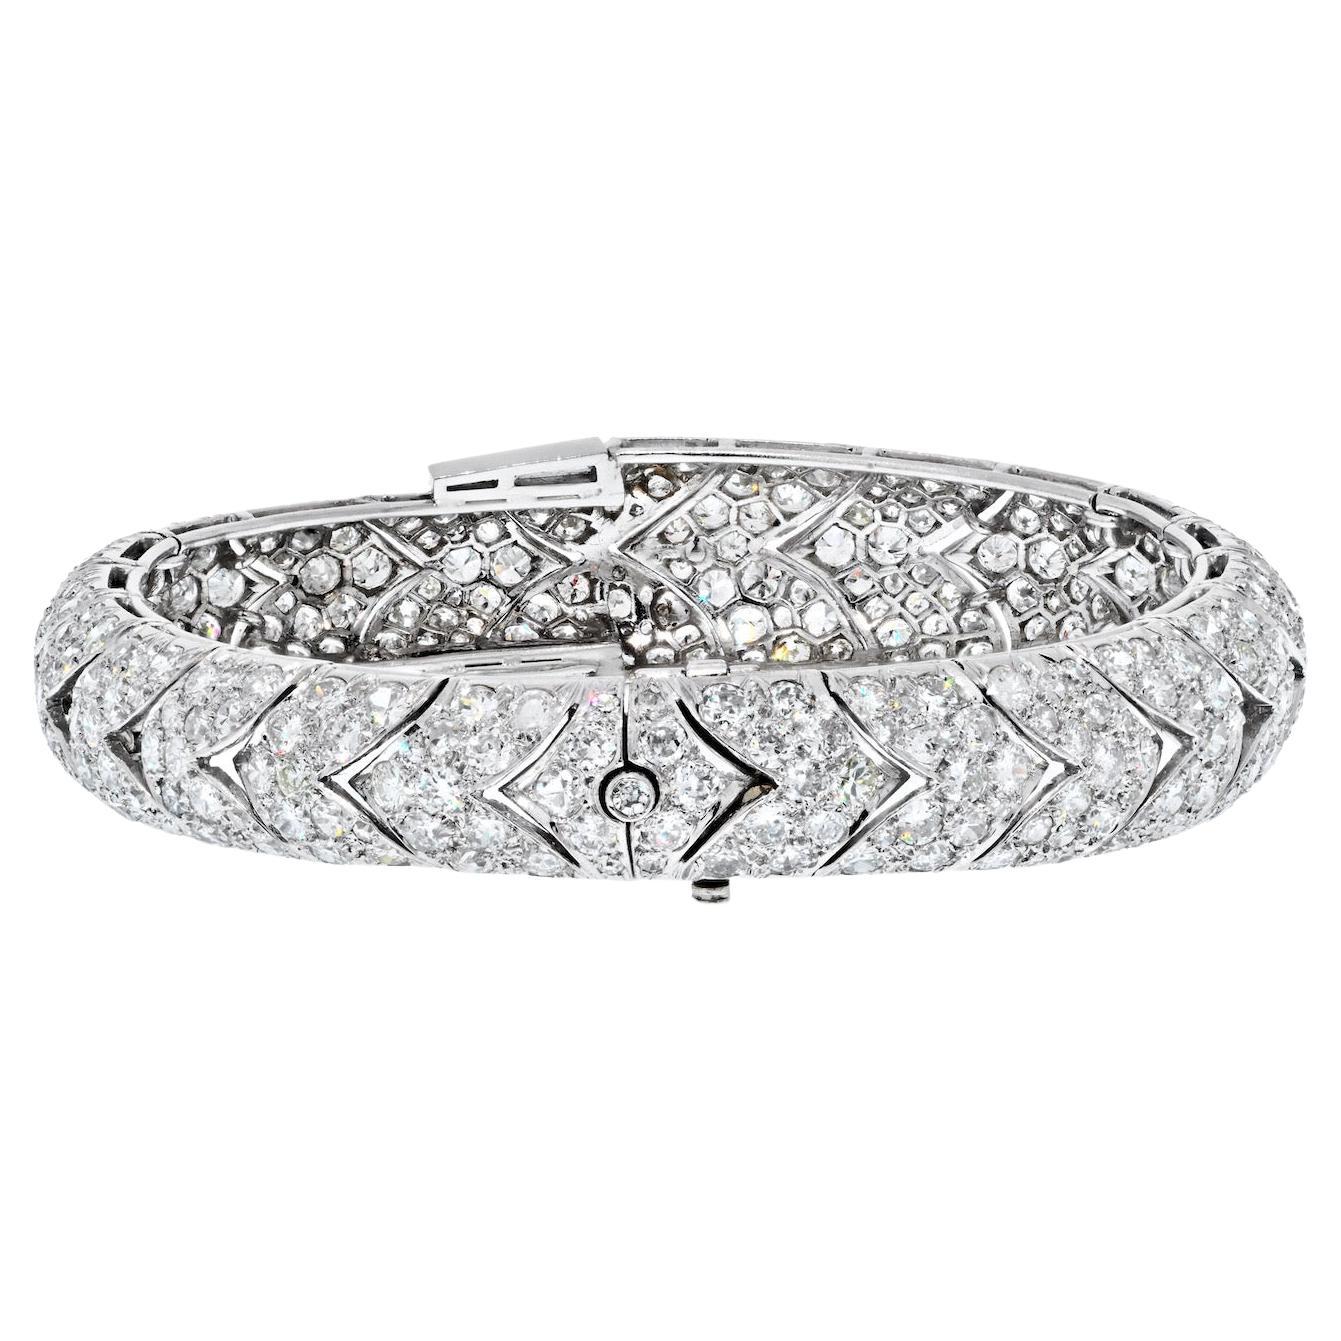 Il s'agit d'un bracelet très spécial de l'époque Art déco, fabriqué vers les années 1930 en platine avec des diamants. 
Monté avec plus de 400 diamants de forme ronde de taille ancienne et quelques baguettes. Jolie étincelle, propre dans l'ensemble.